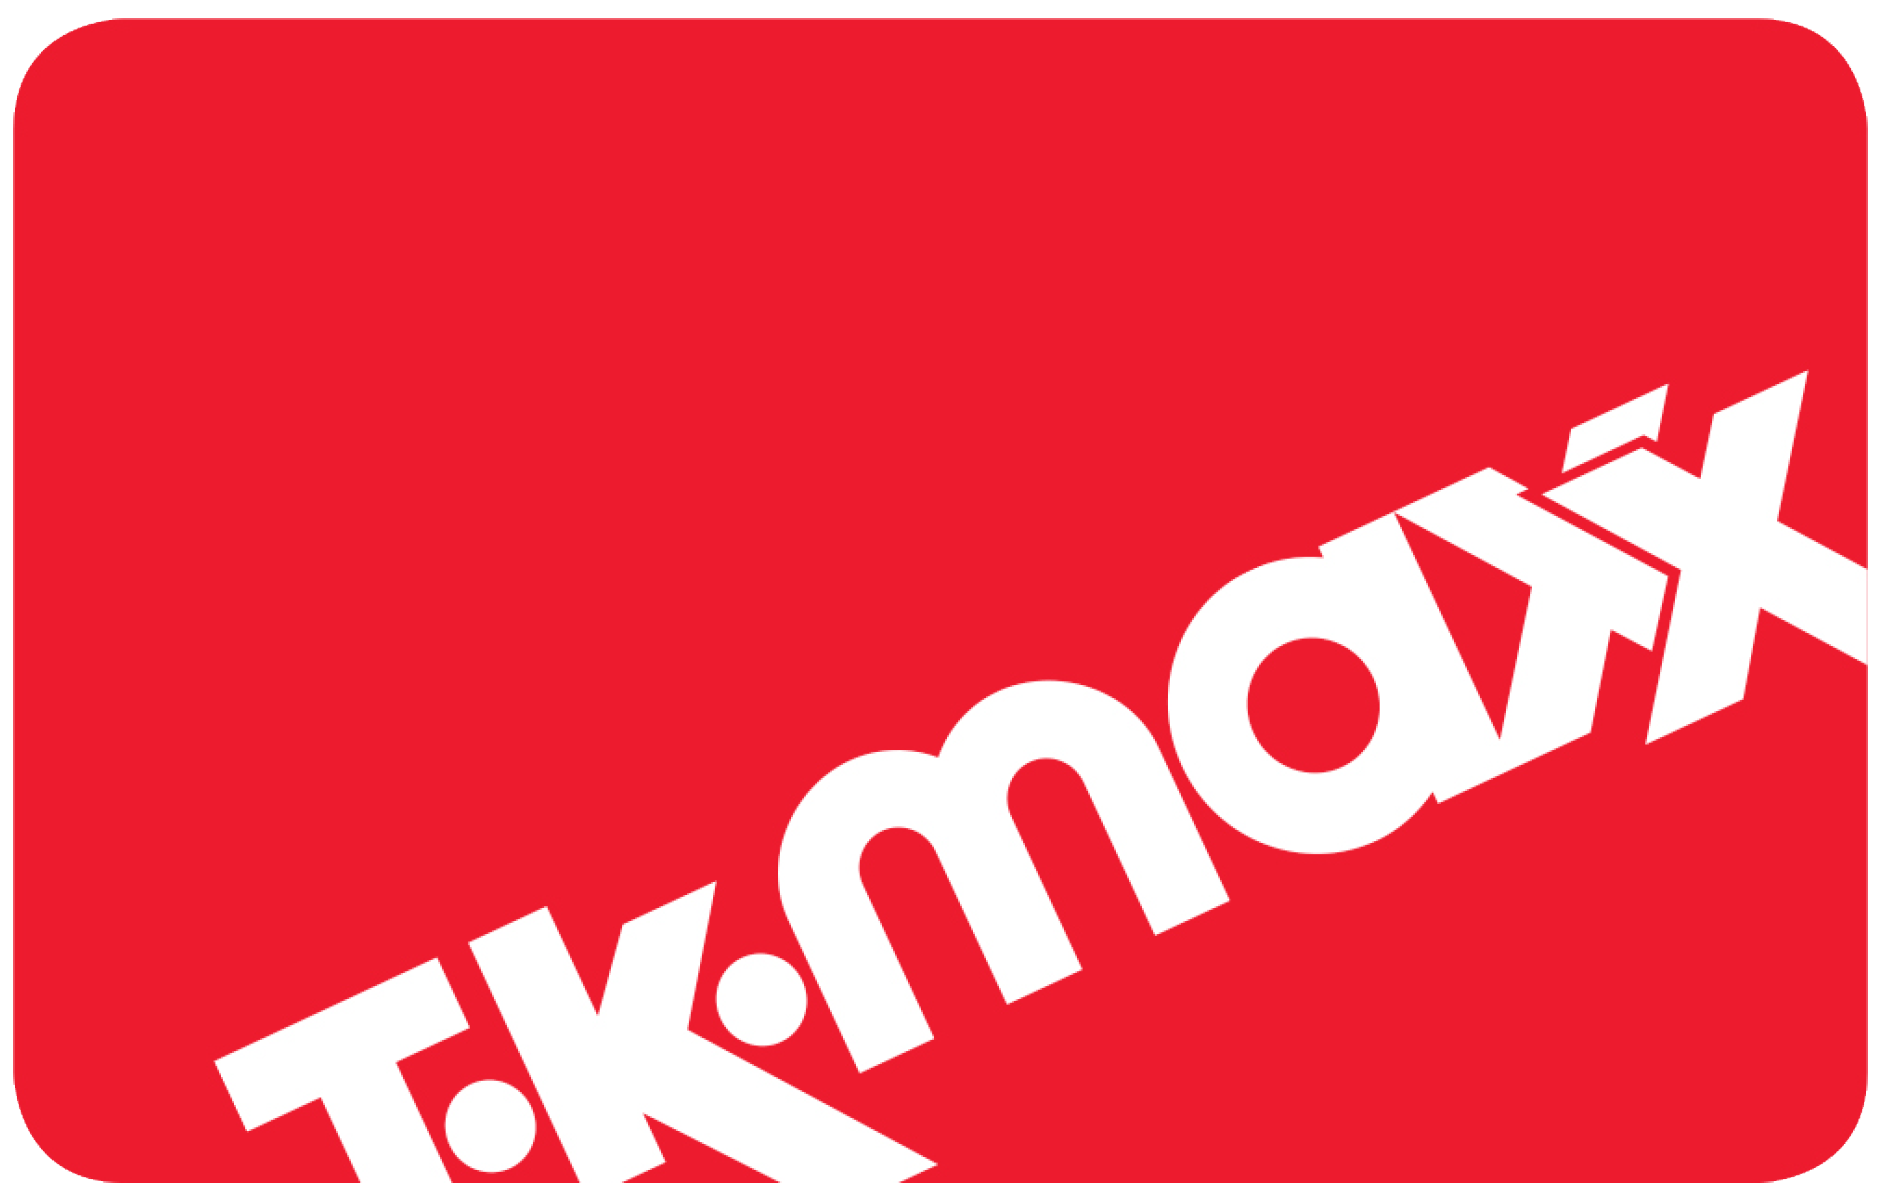 TK Maxx UK